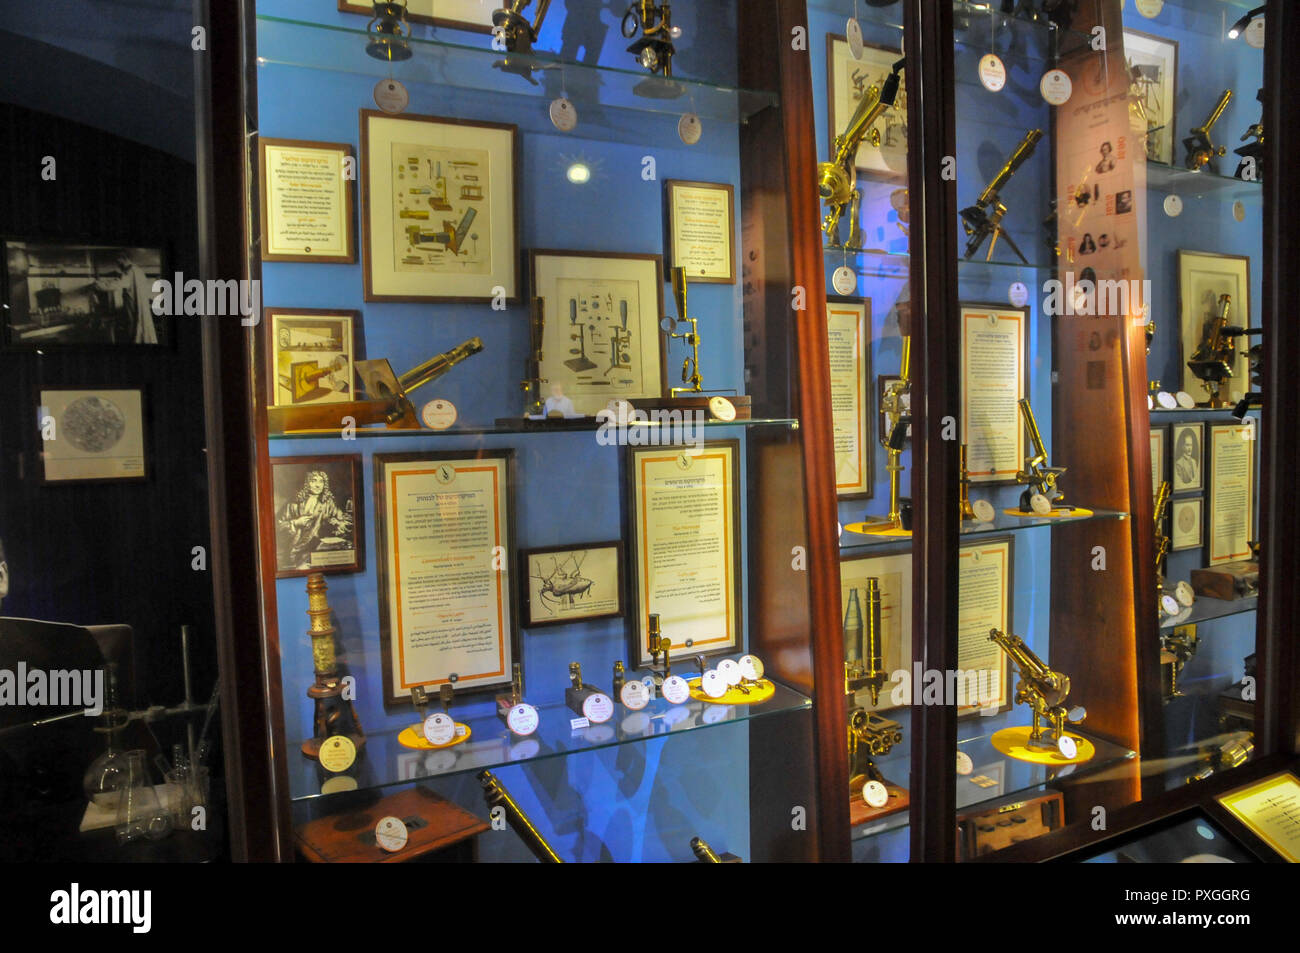 Collection de vieux et antique microscopes à Madatech, Israélien National Museum of Science Technology and Space, Haïfa, Israël Banque D'Images